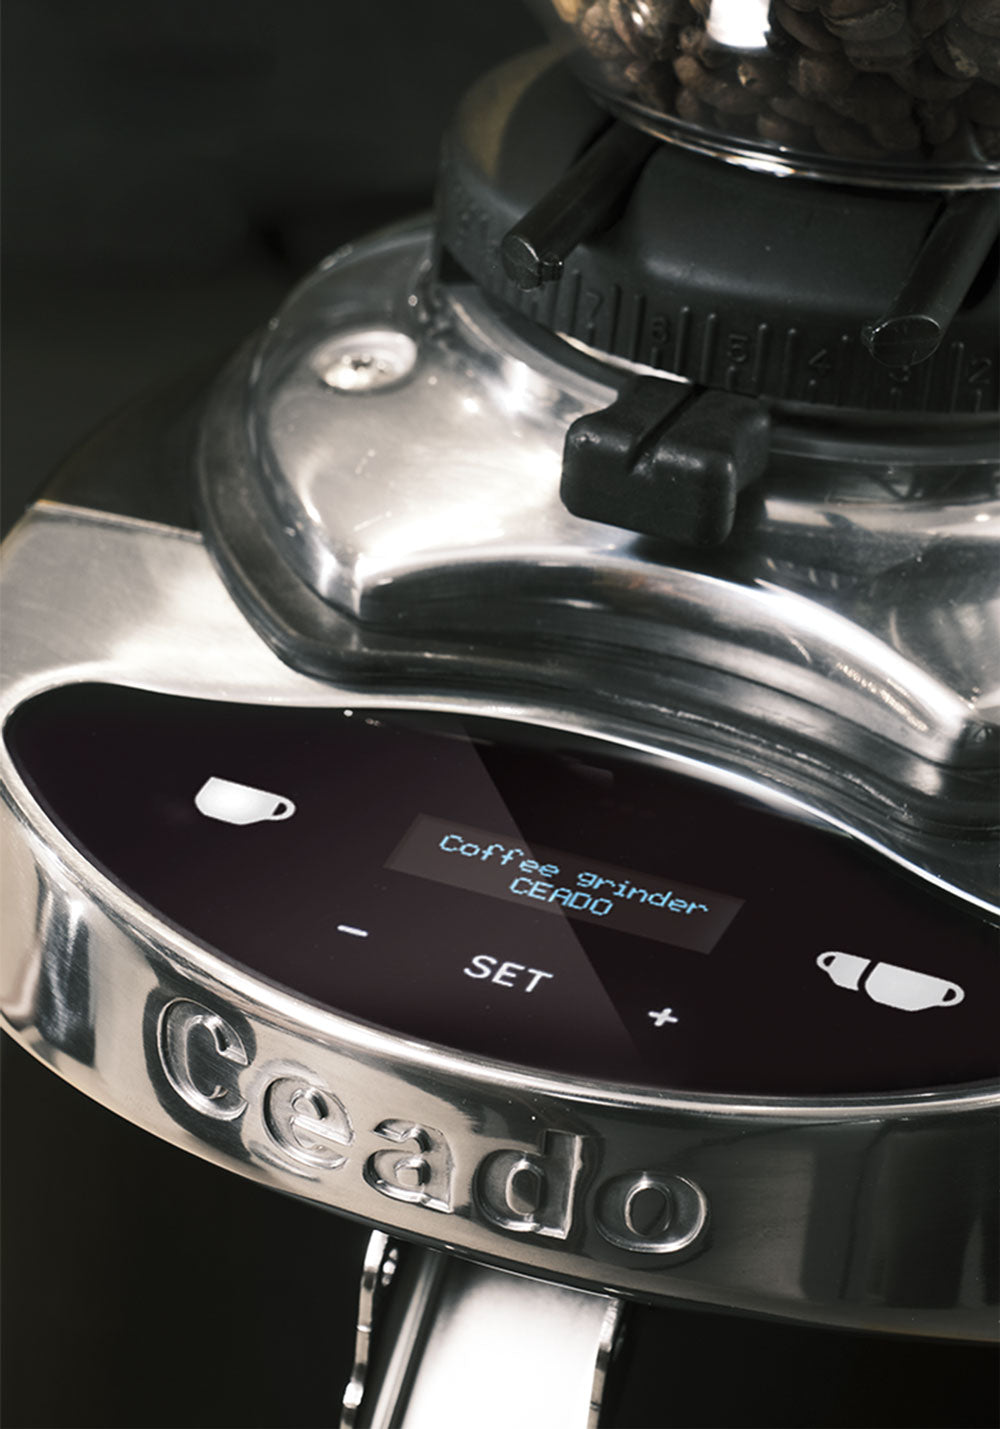 Ceado E37J On Demand Espresso Grinder